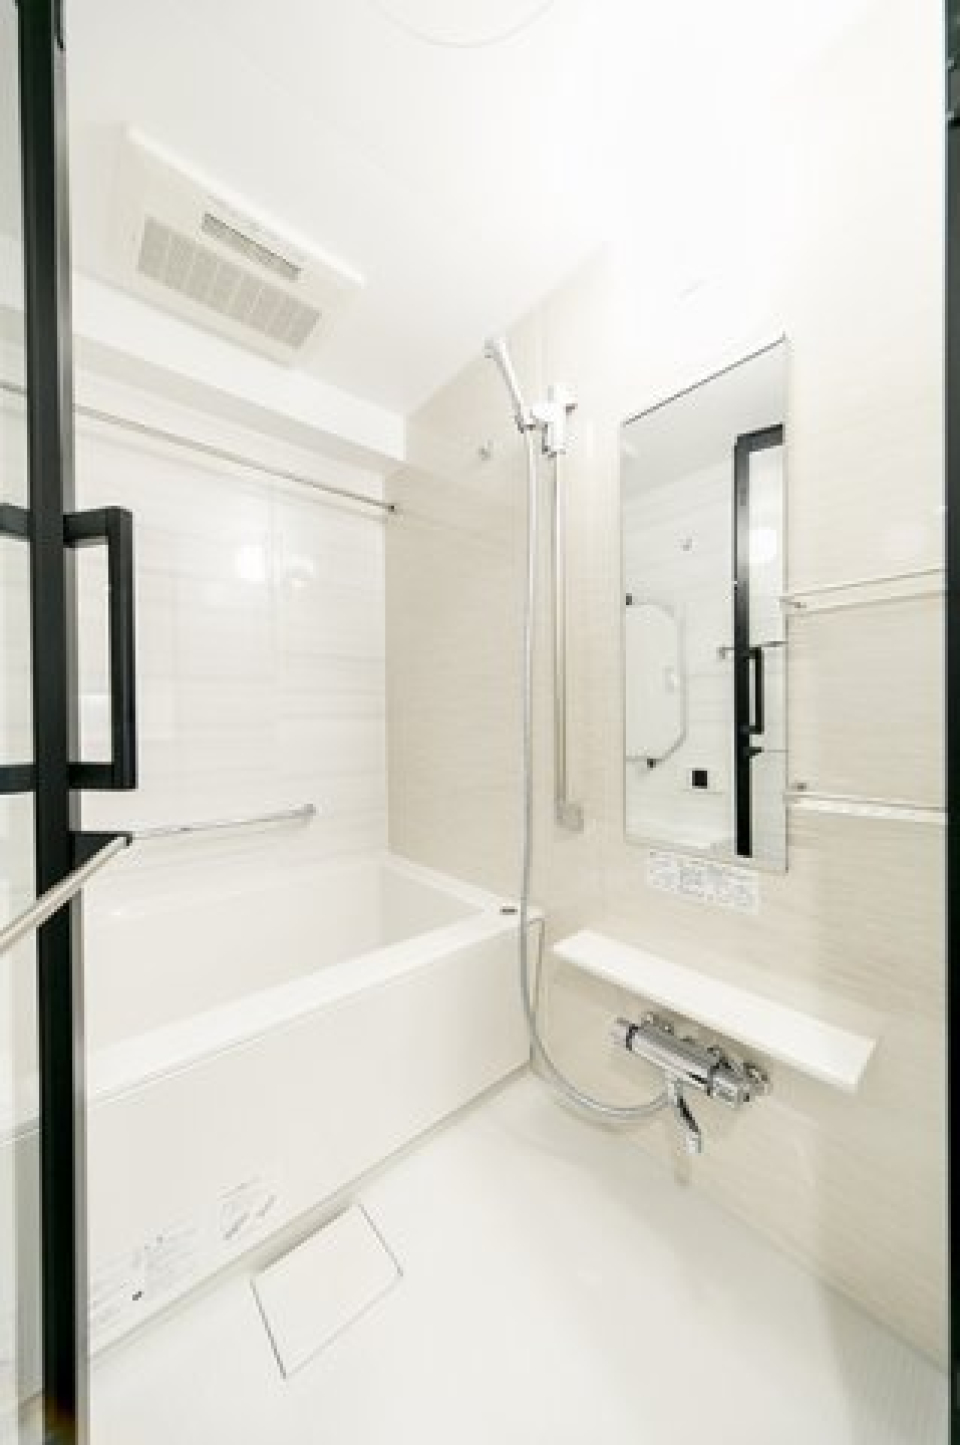 シンプルな白で統一された浴室。※写真は同タイプ住戸です。